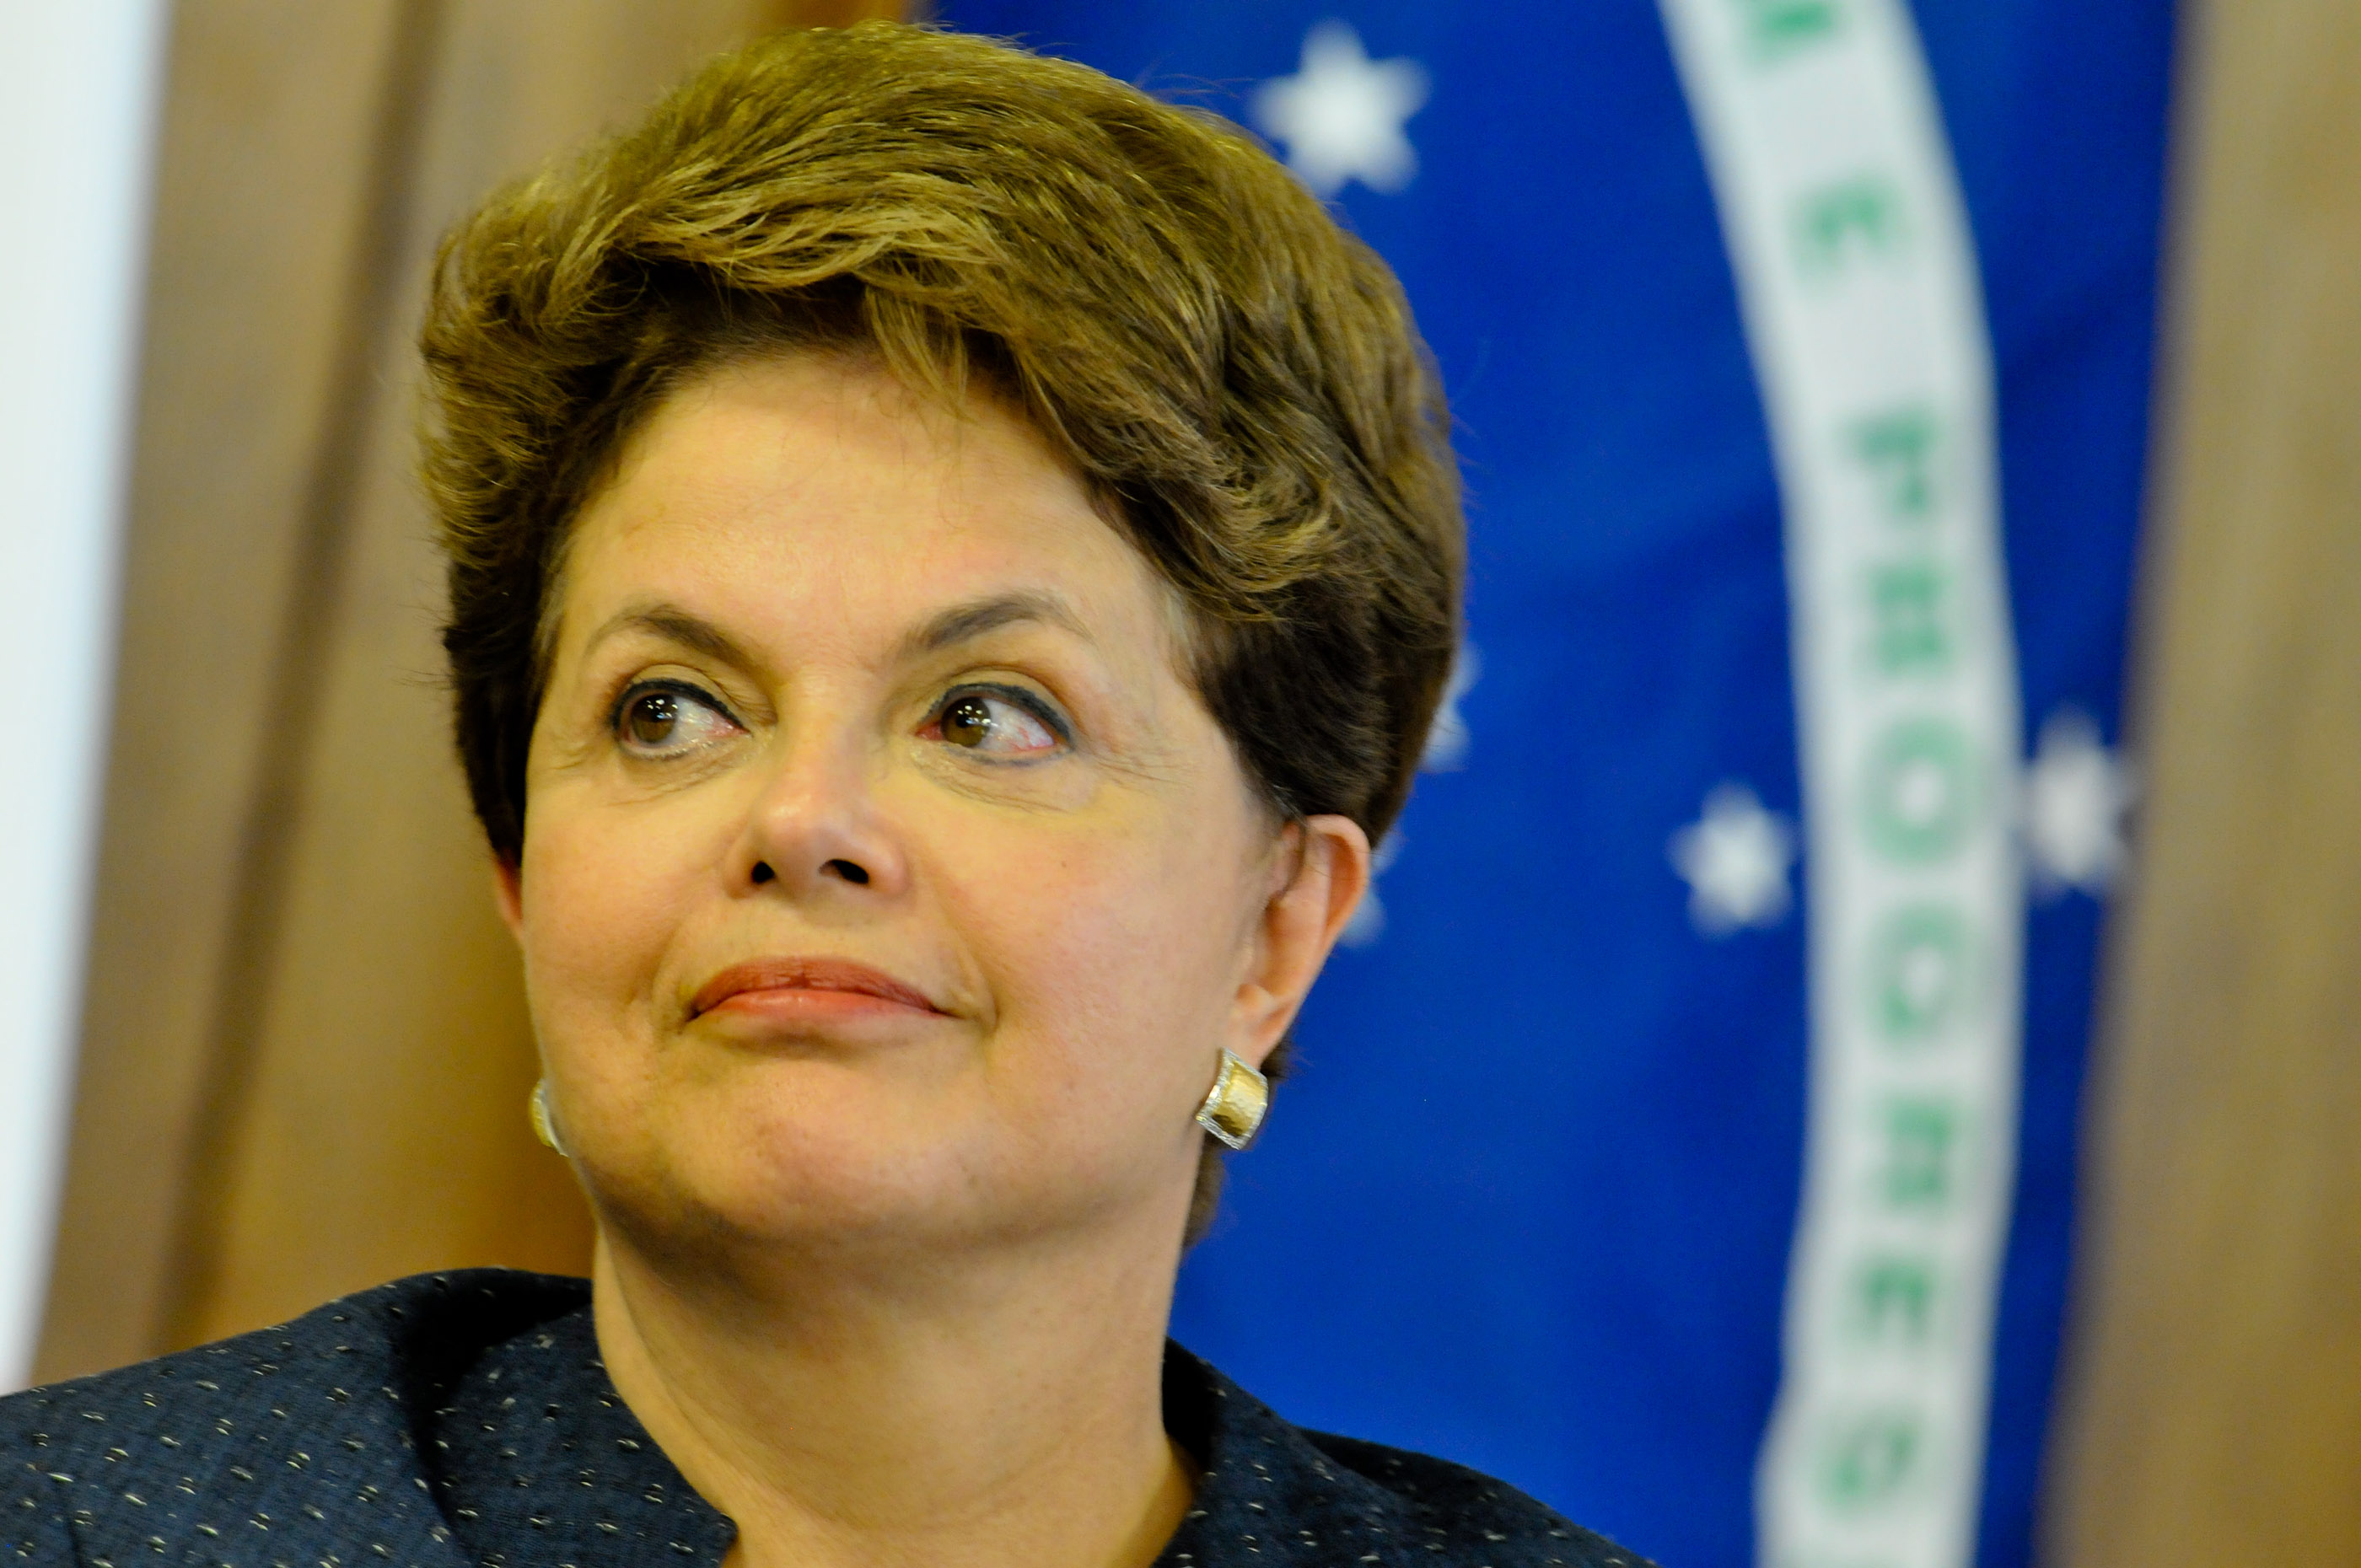 “Estou vivendo a dor da traição e da injustiça”, diz Dilma a manifestantes